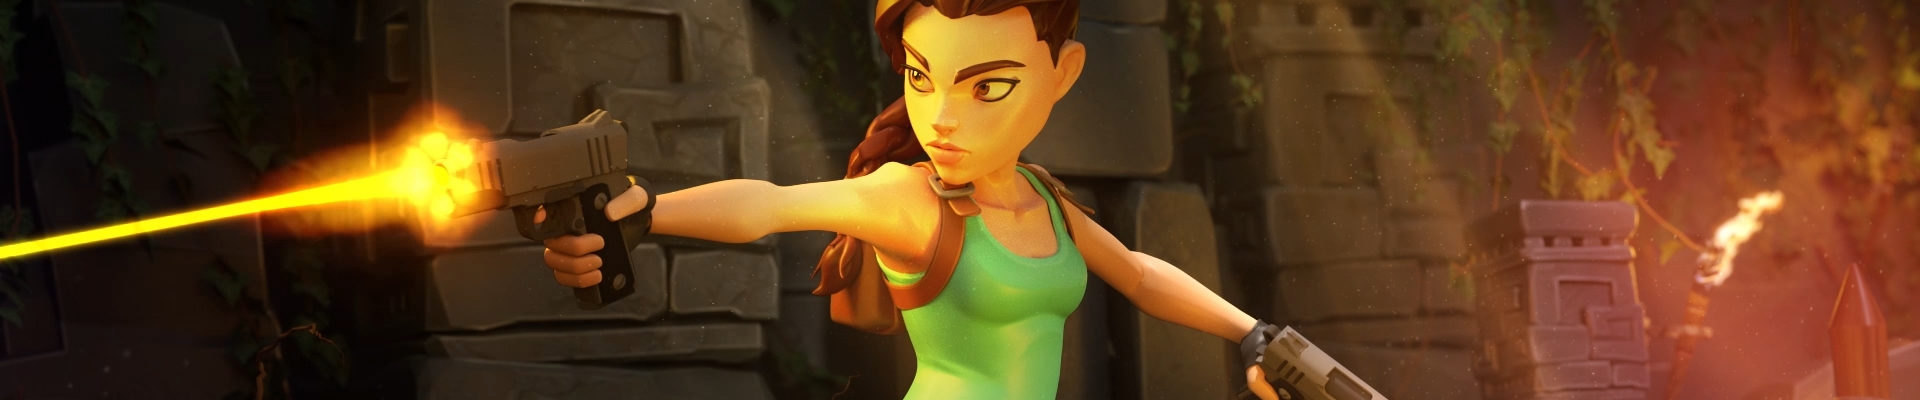 Image de l'article Tomb Raider: Reloaded, un nouveau jeu mobile !